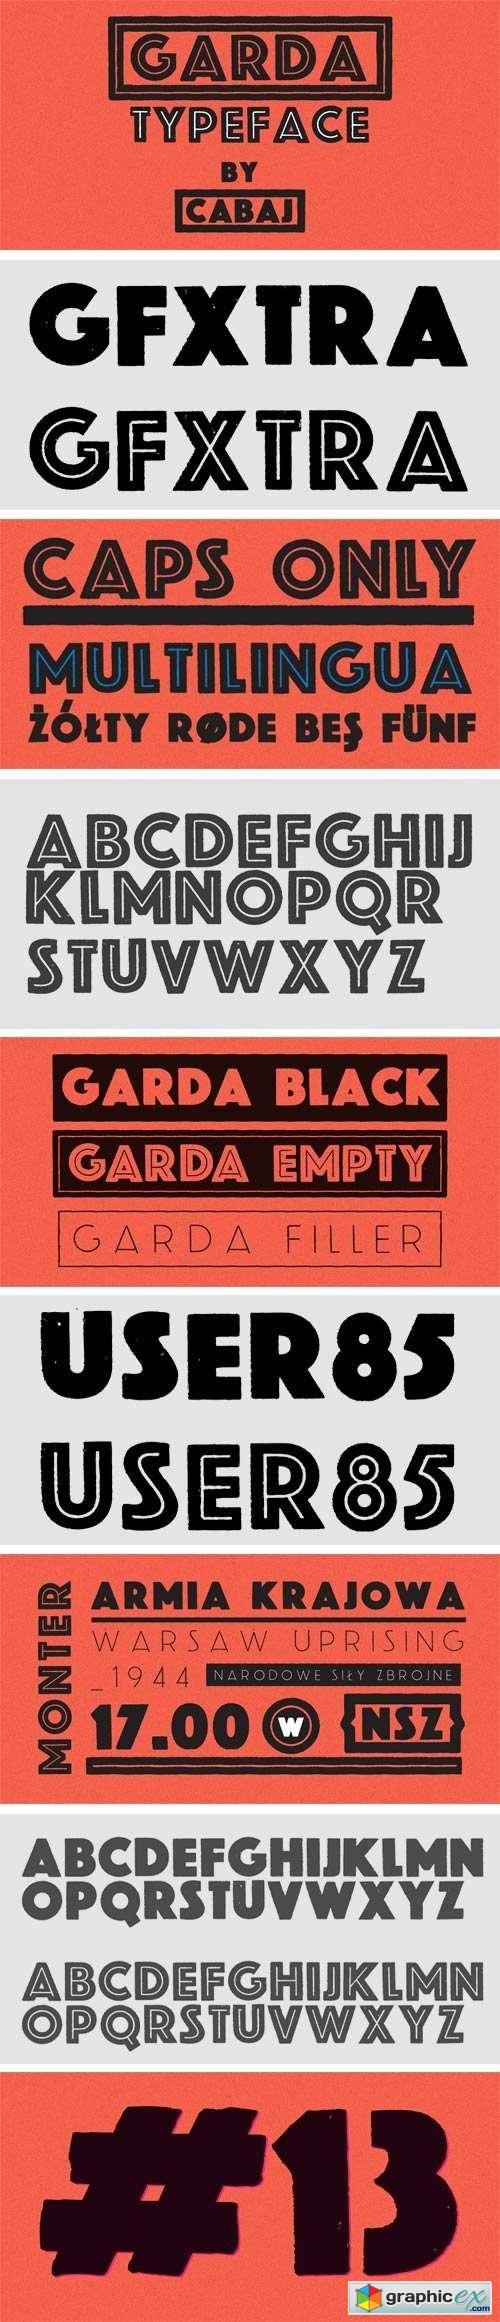 Garda Font Family - 4 Fonts for $40